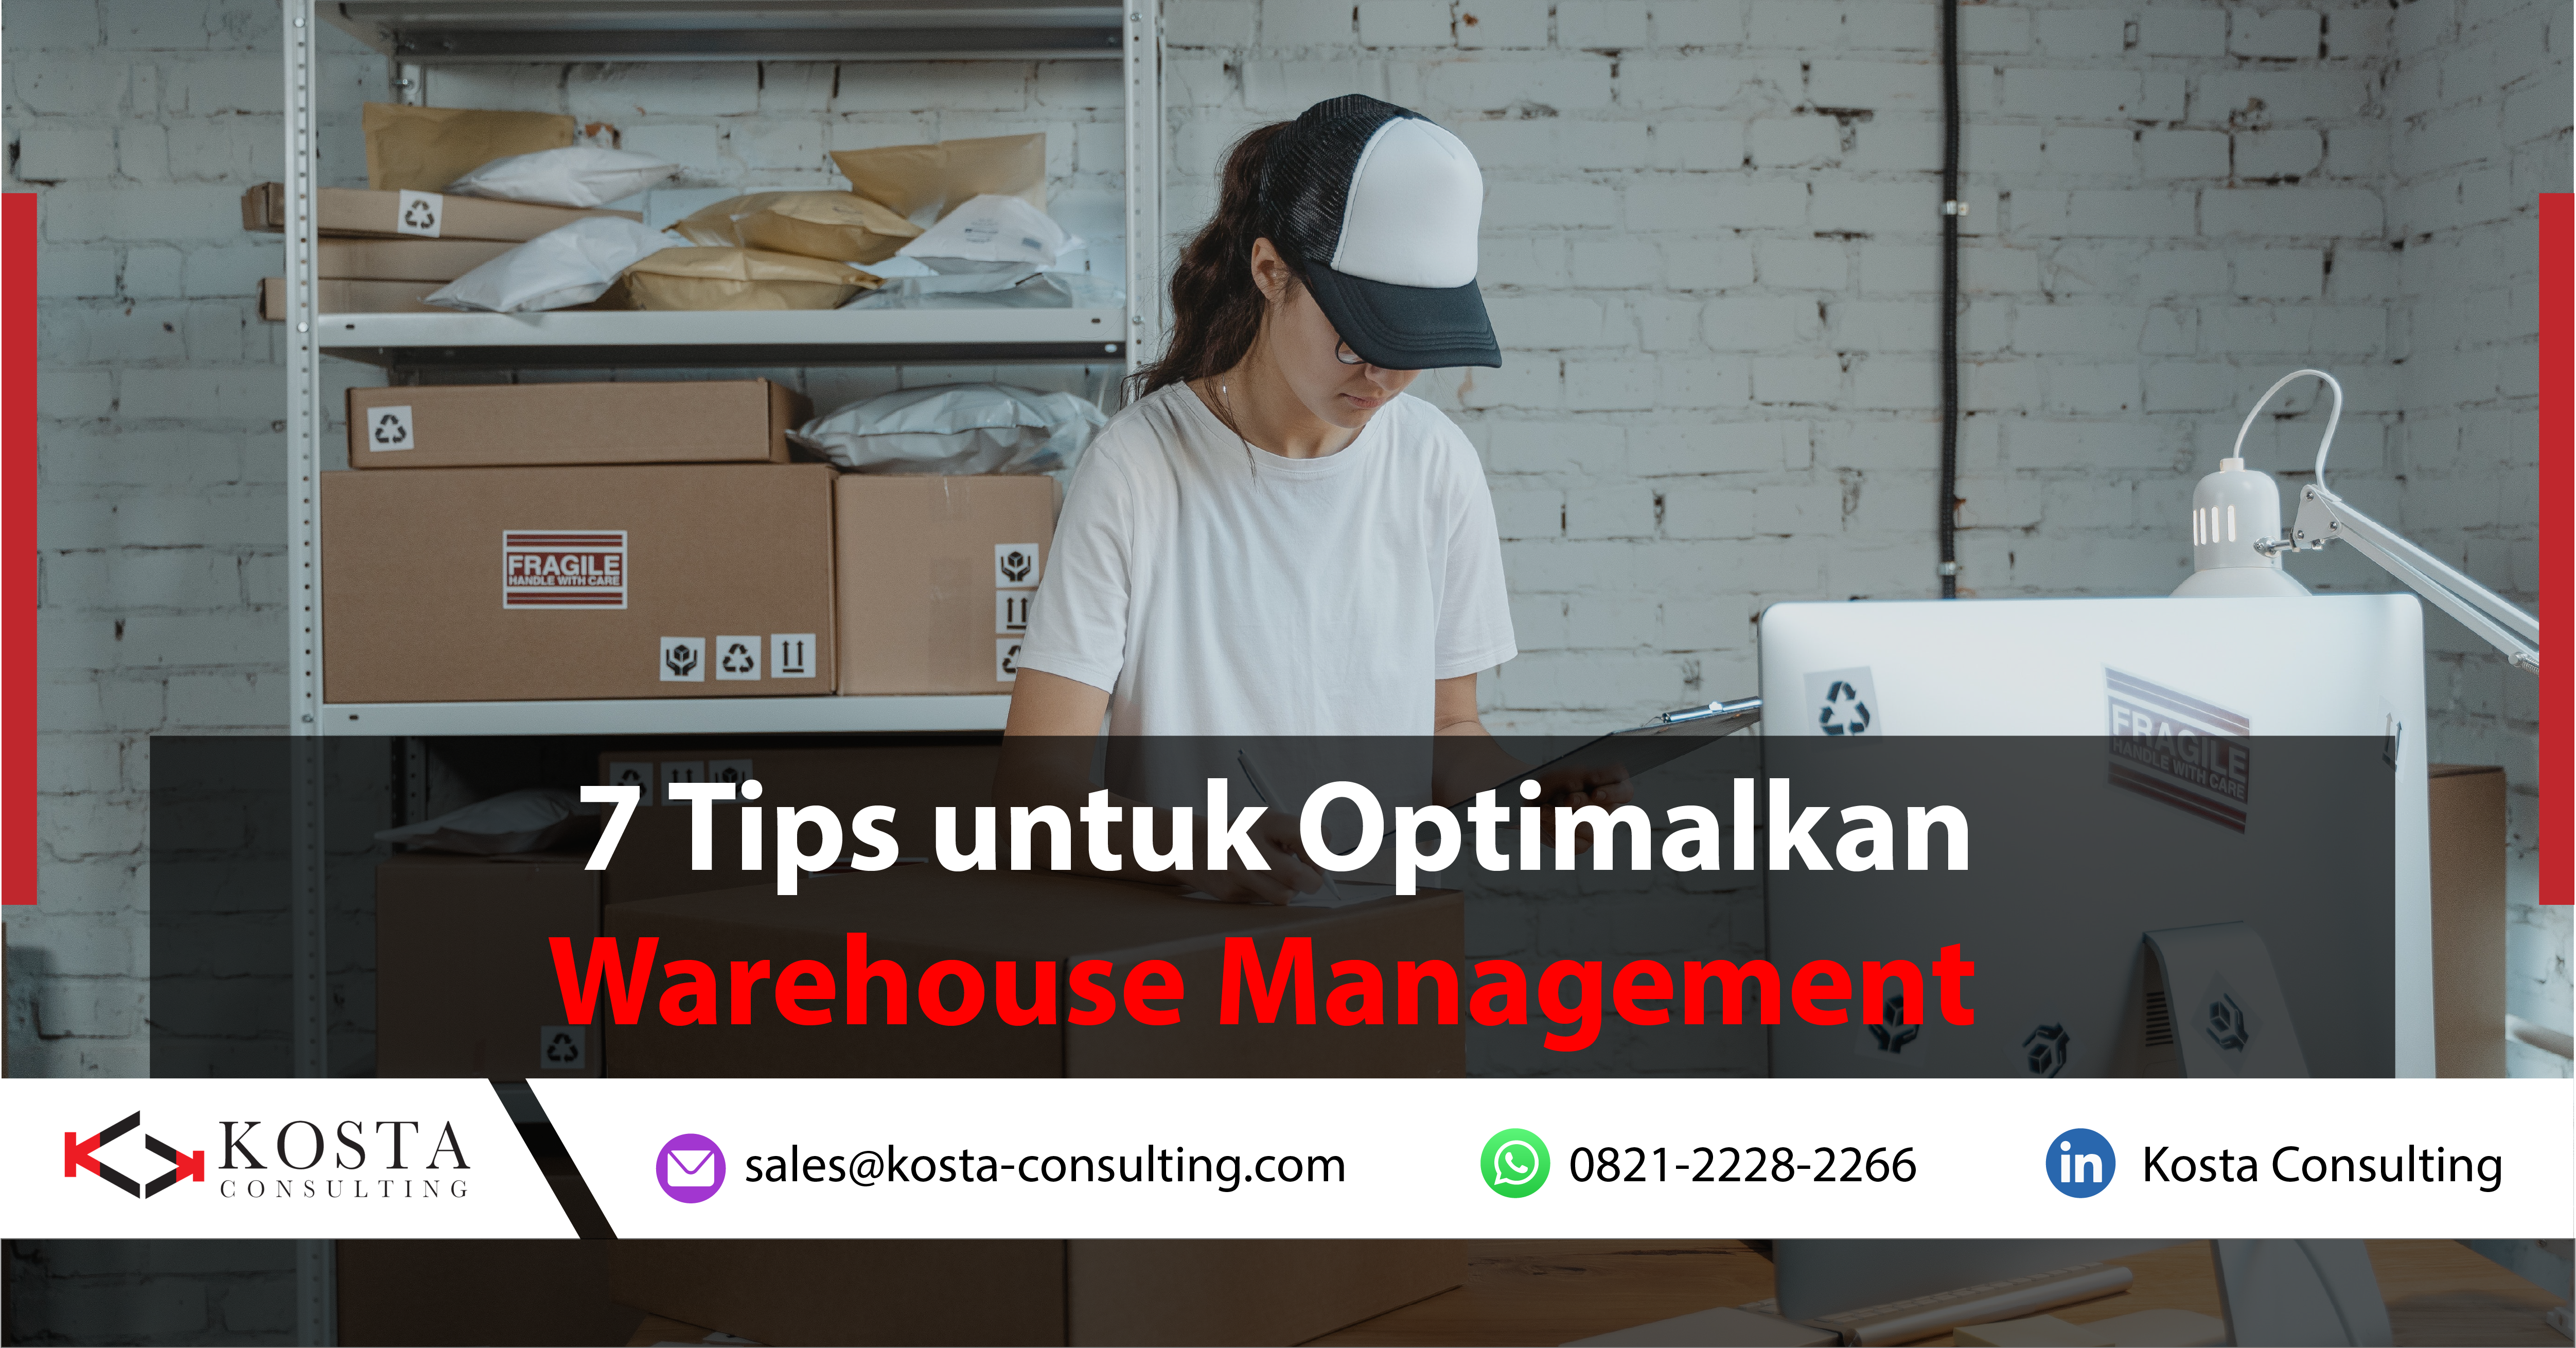 7 Tips untuk Optimalkan Warehouse Management